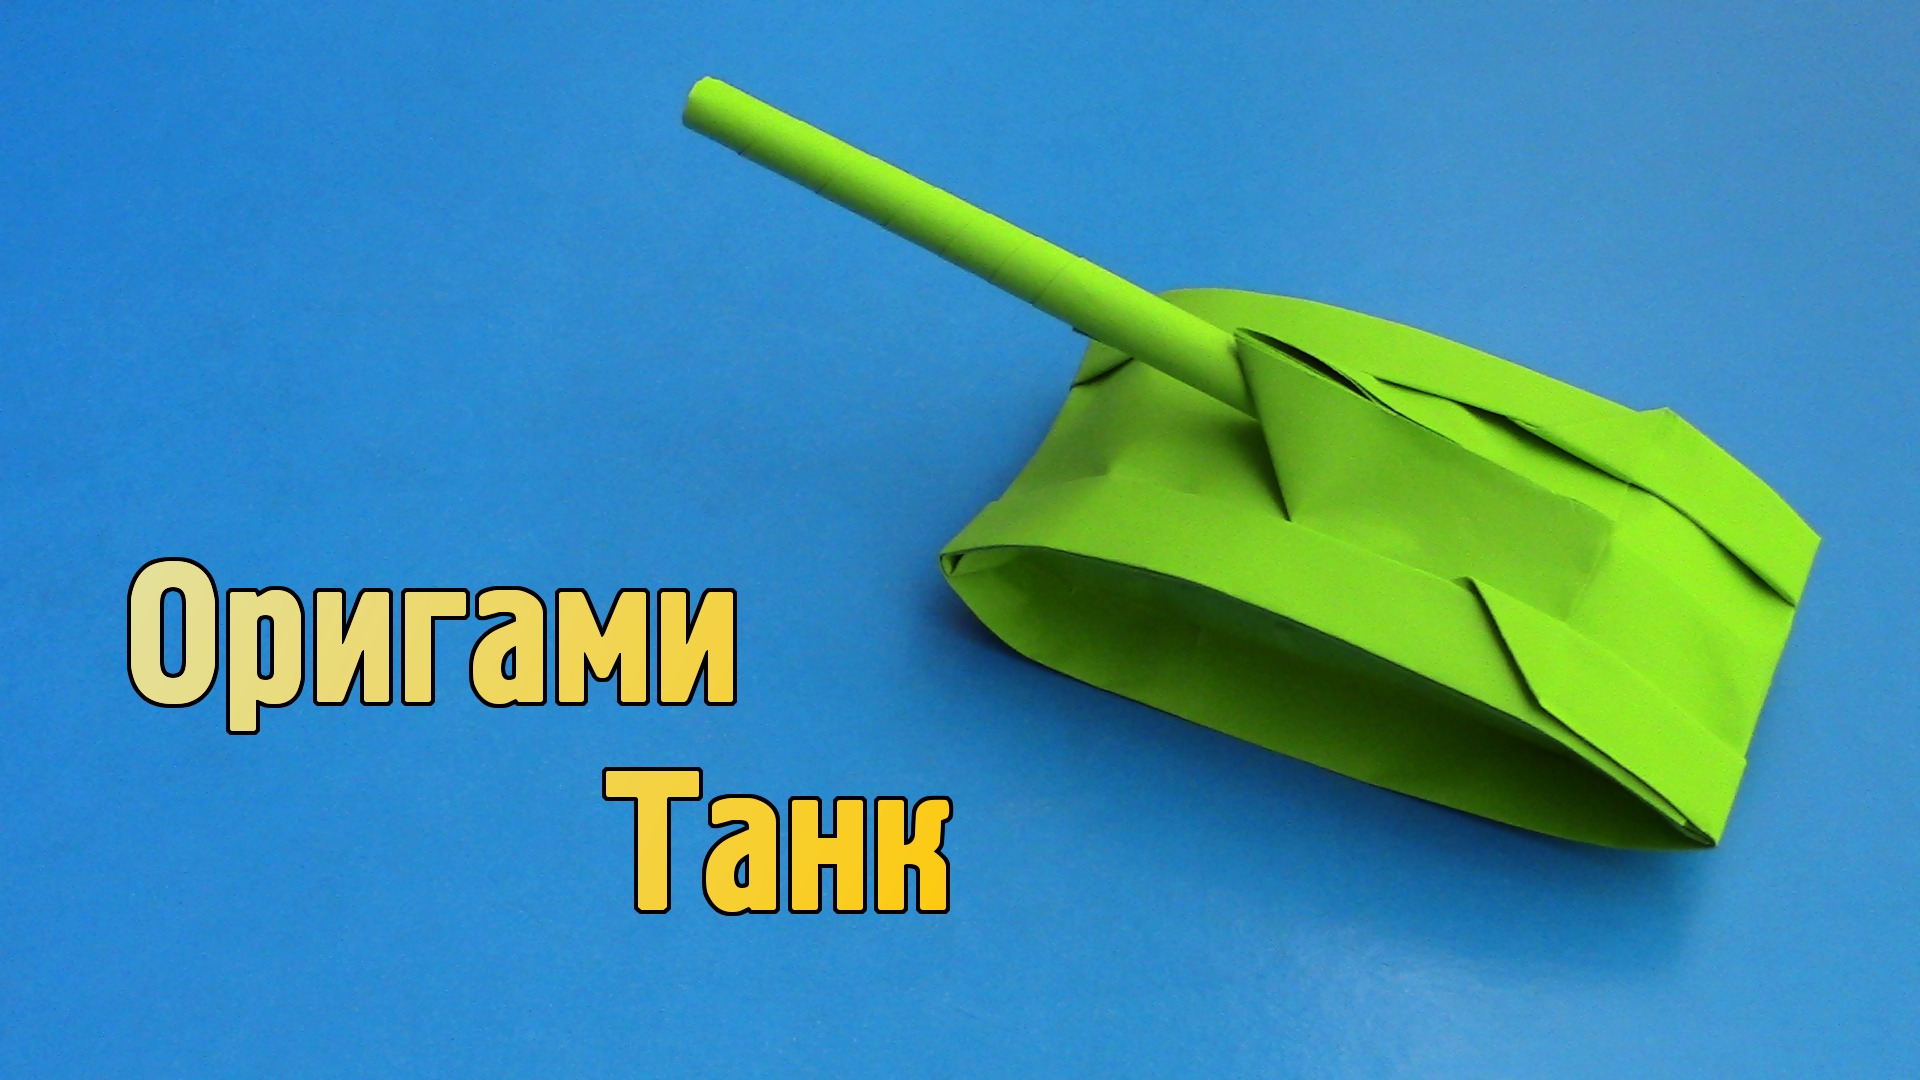 Как сделать Танк из бумаги своими руками | Оригами Танк для детей | Фигурка Военной Техники